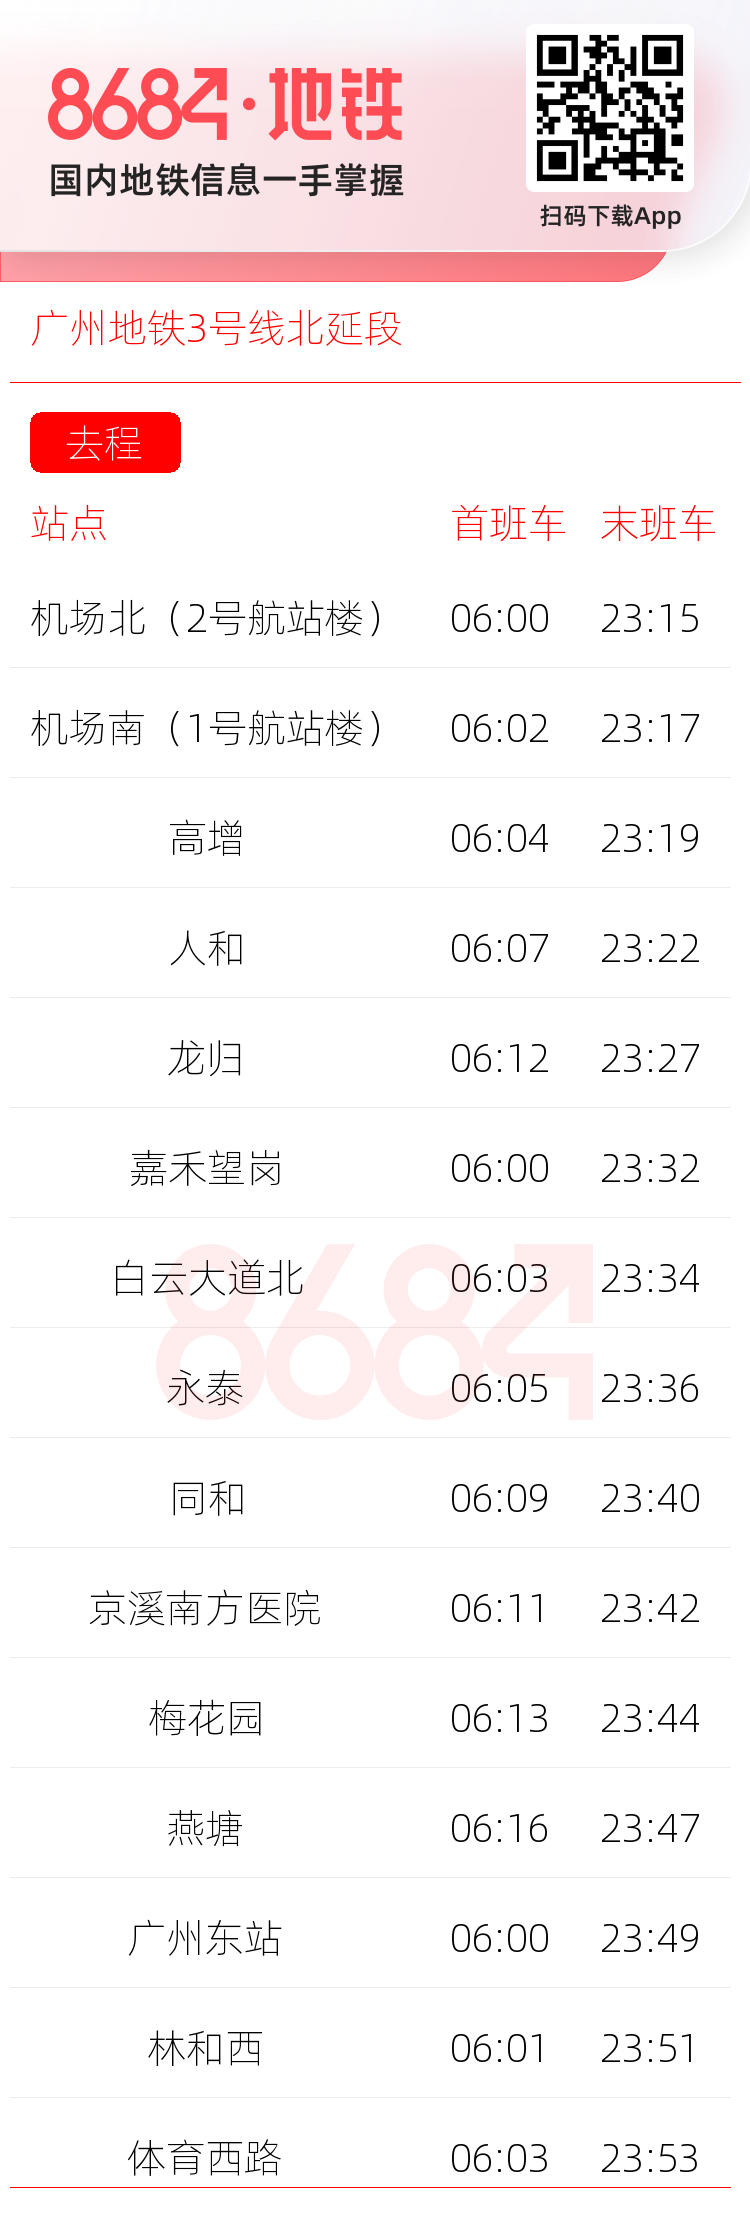 广州地铁3号线北延段运营时间表